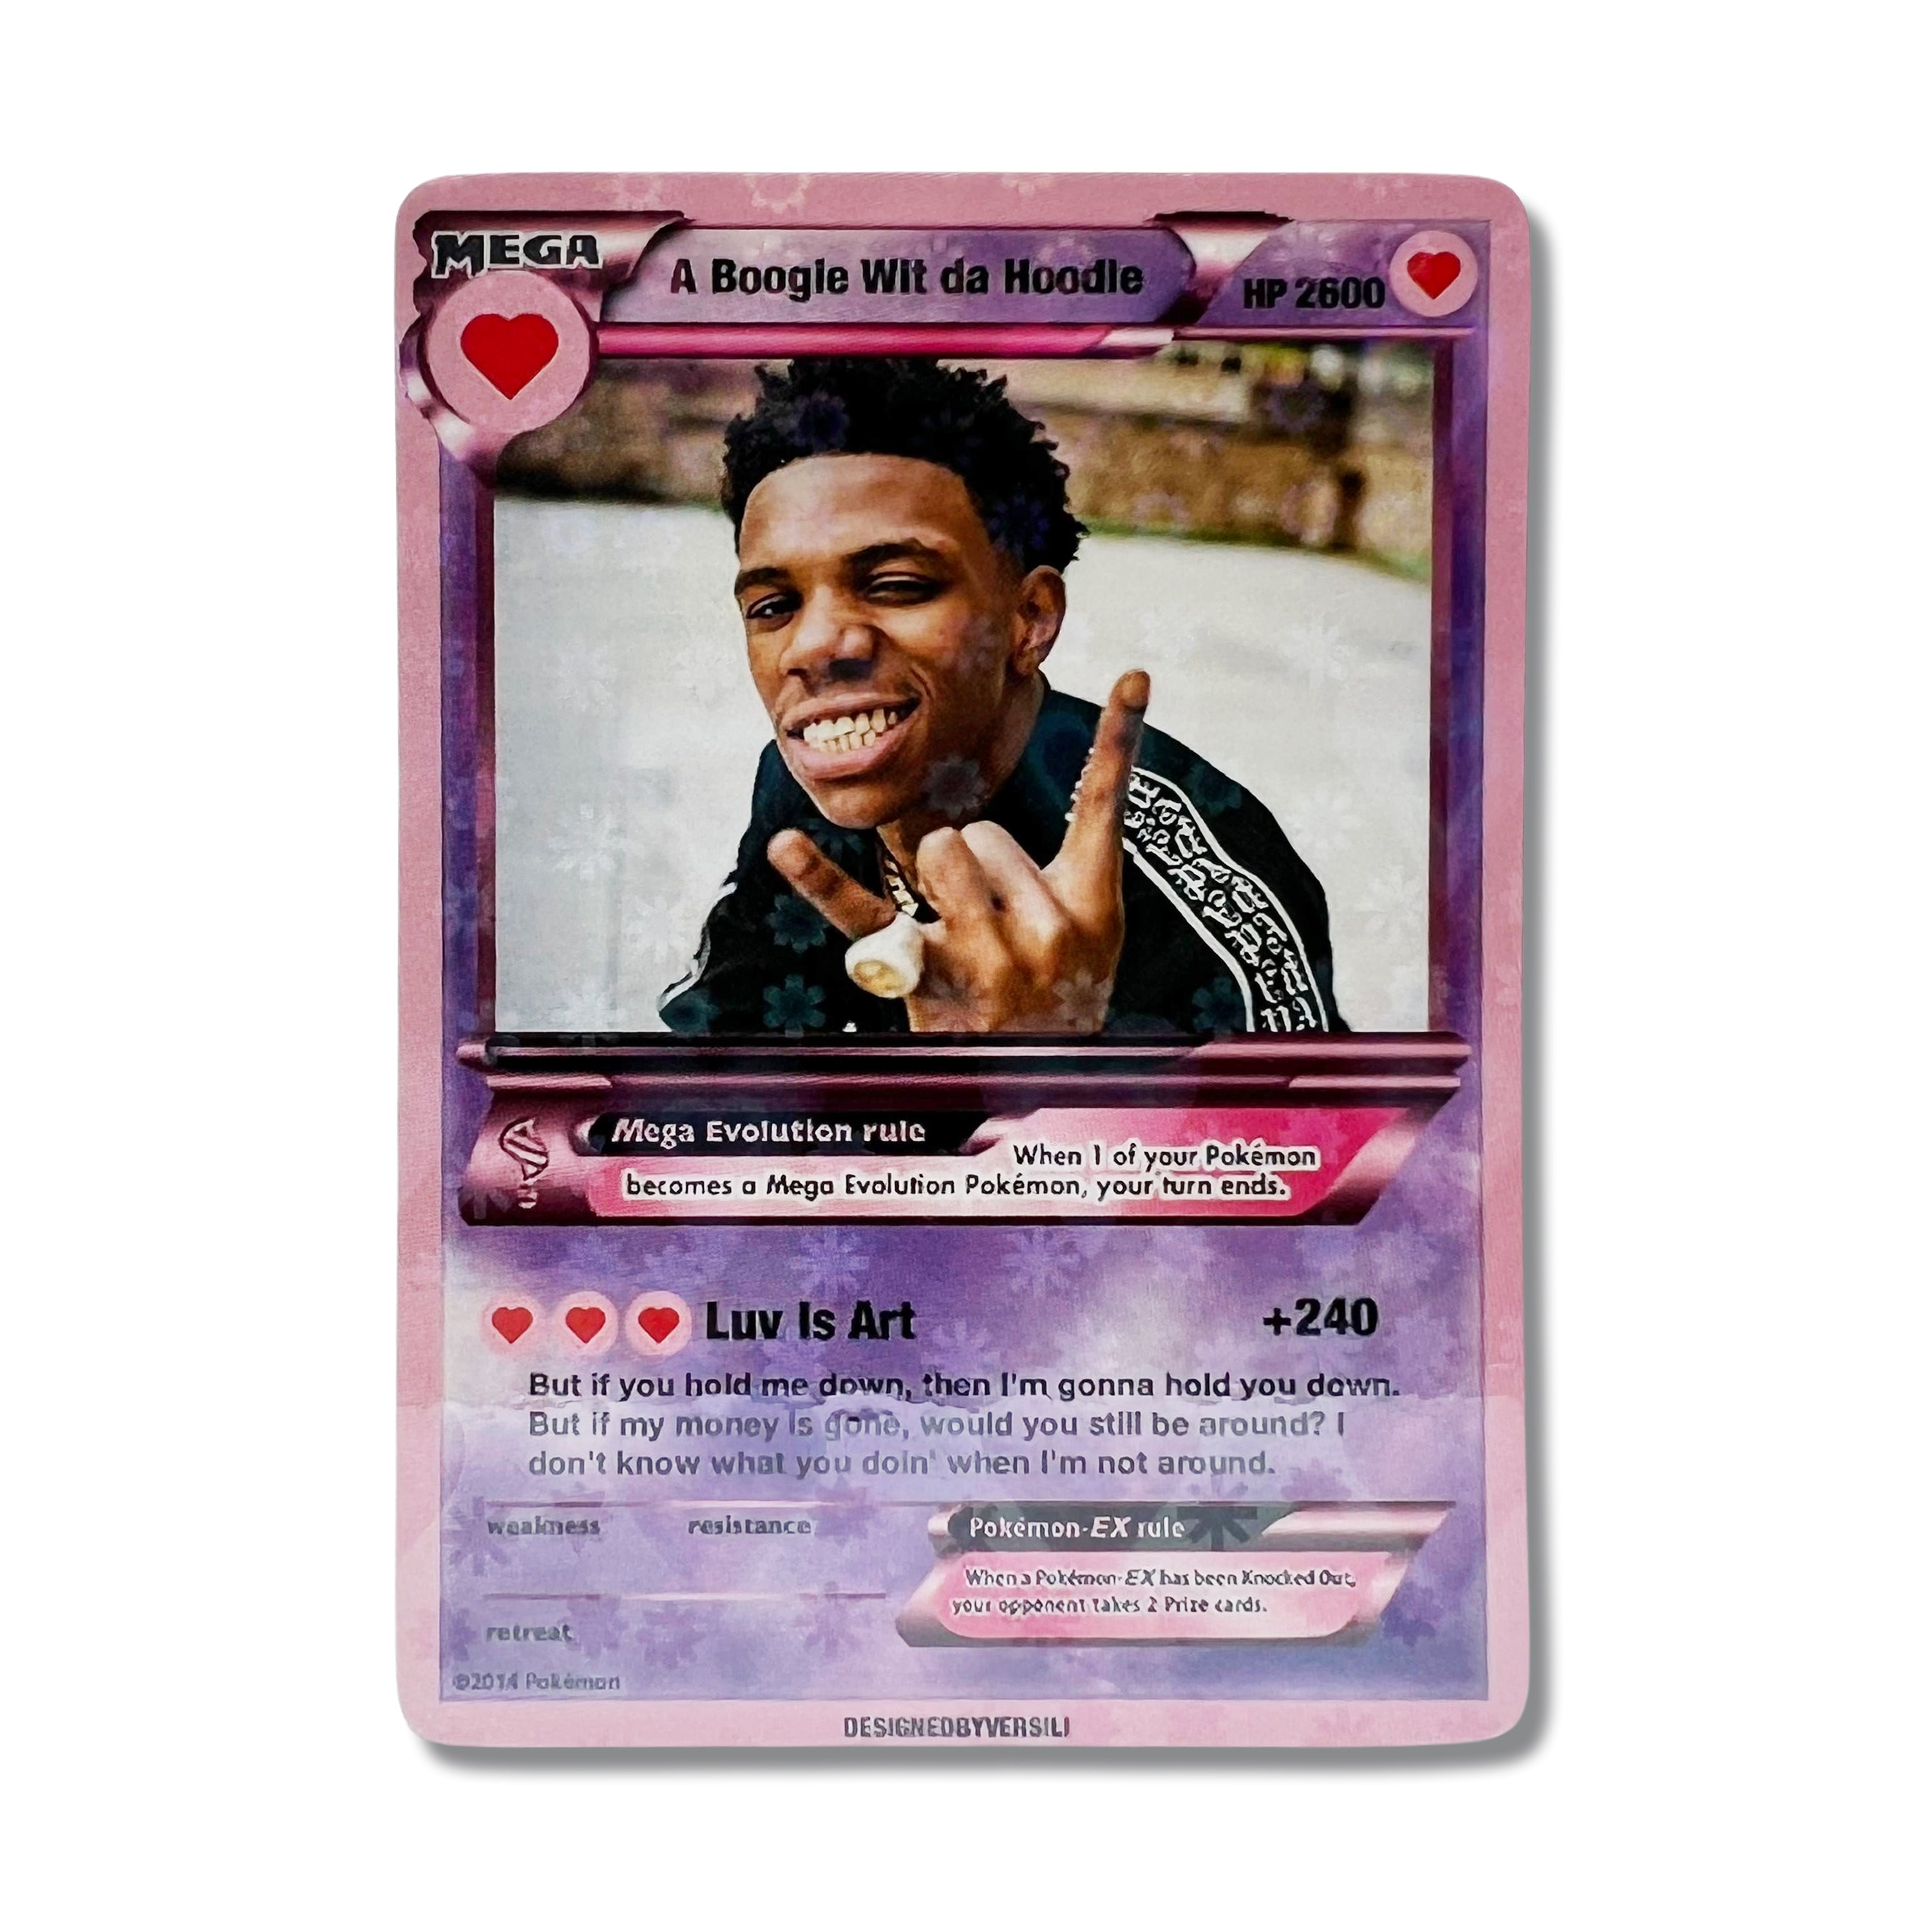 A Boogie Wit da Hoodie Pokémon Card (Valentine’s Day)